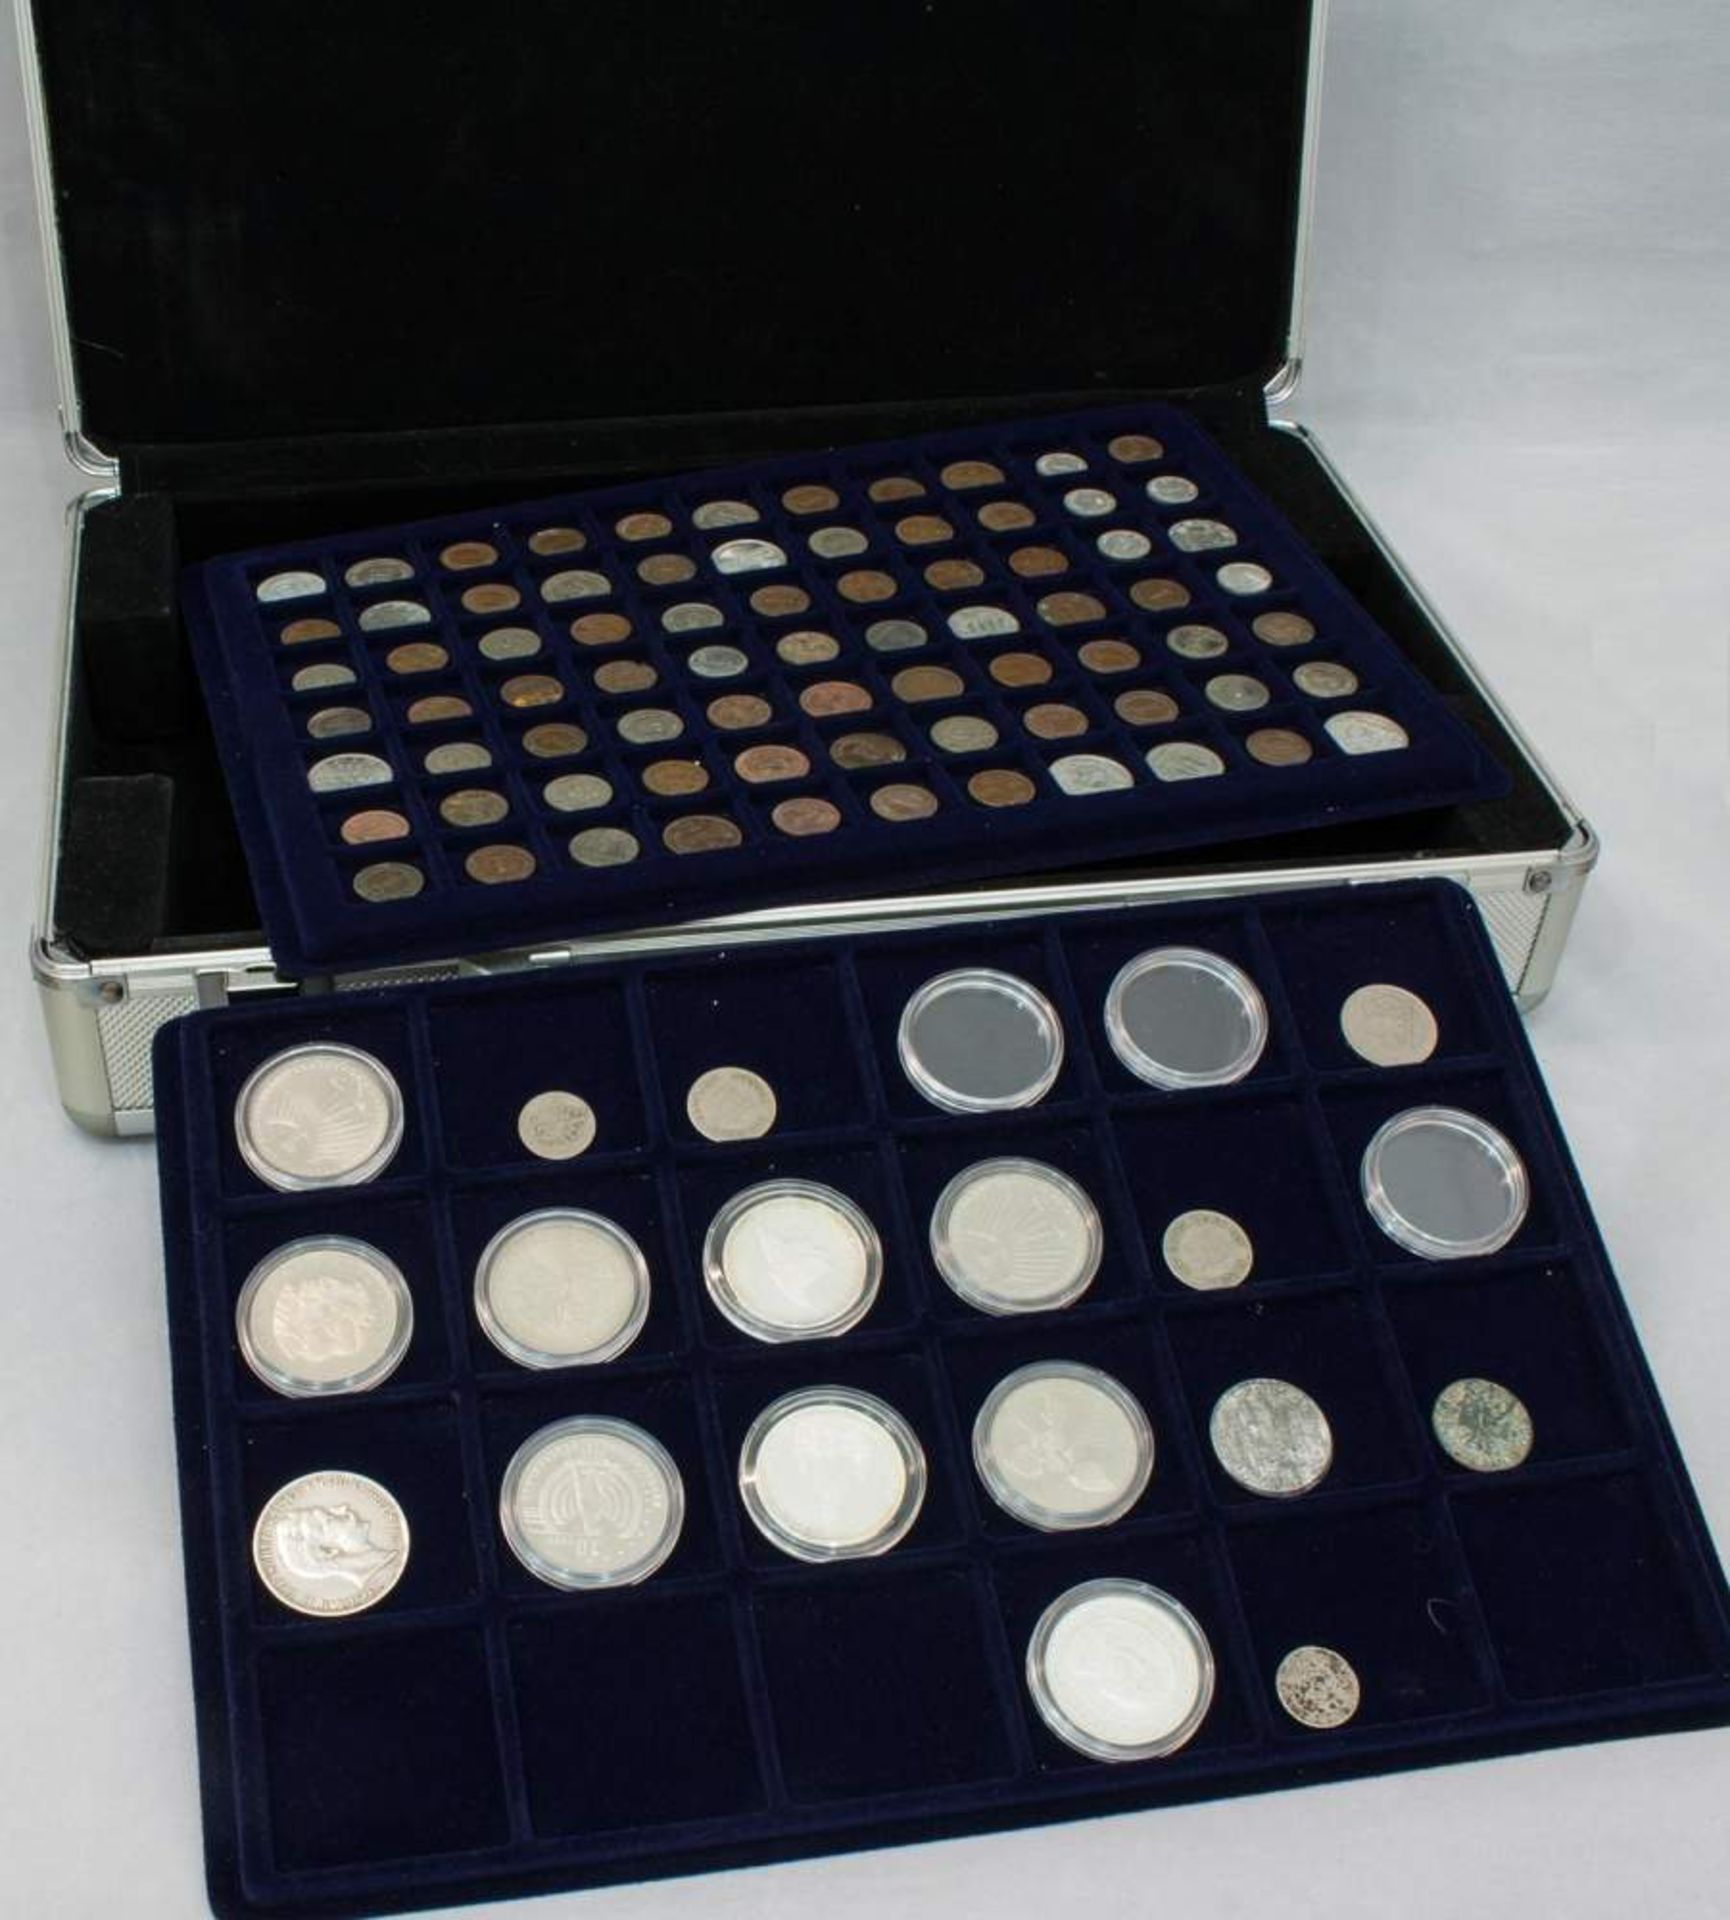 Koffer Münzen94 Münzen, DR u.a. Silber, 10 DM u. 10 ? Sondermünzen, Nominalwert 80 ?, incl.